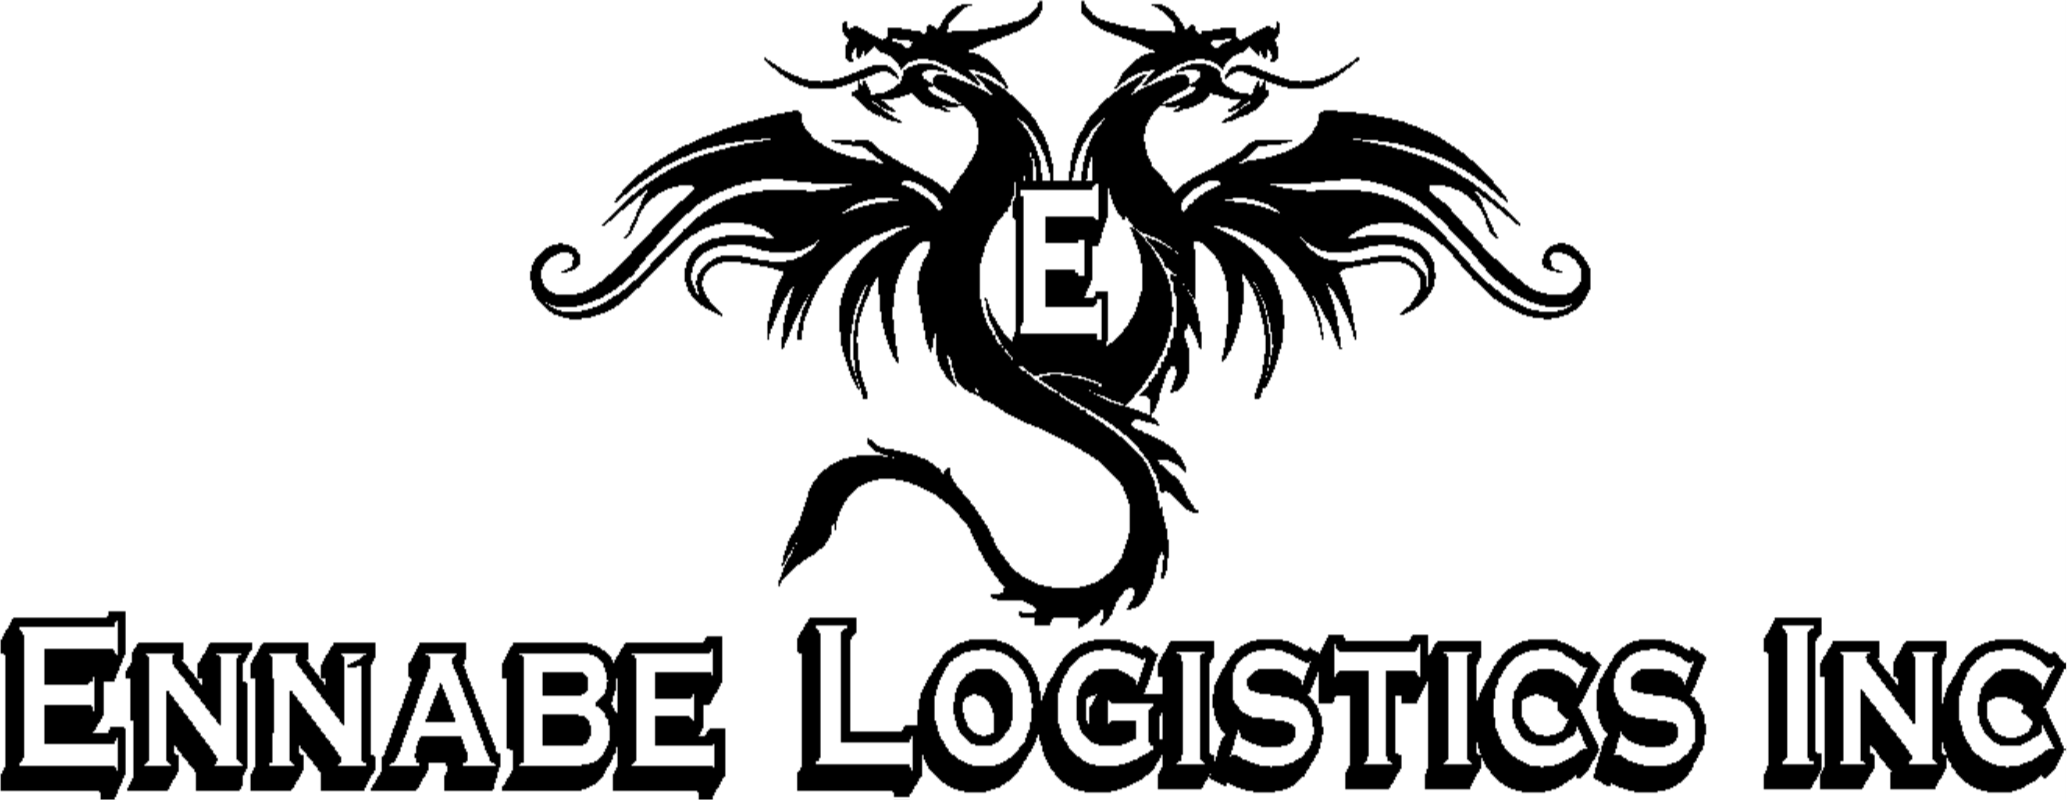 Ennabe Logistics, Inc.